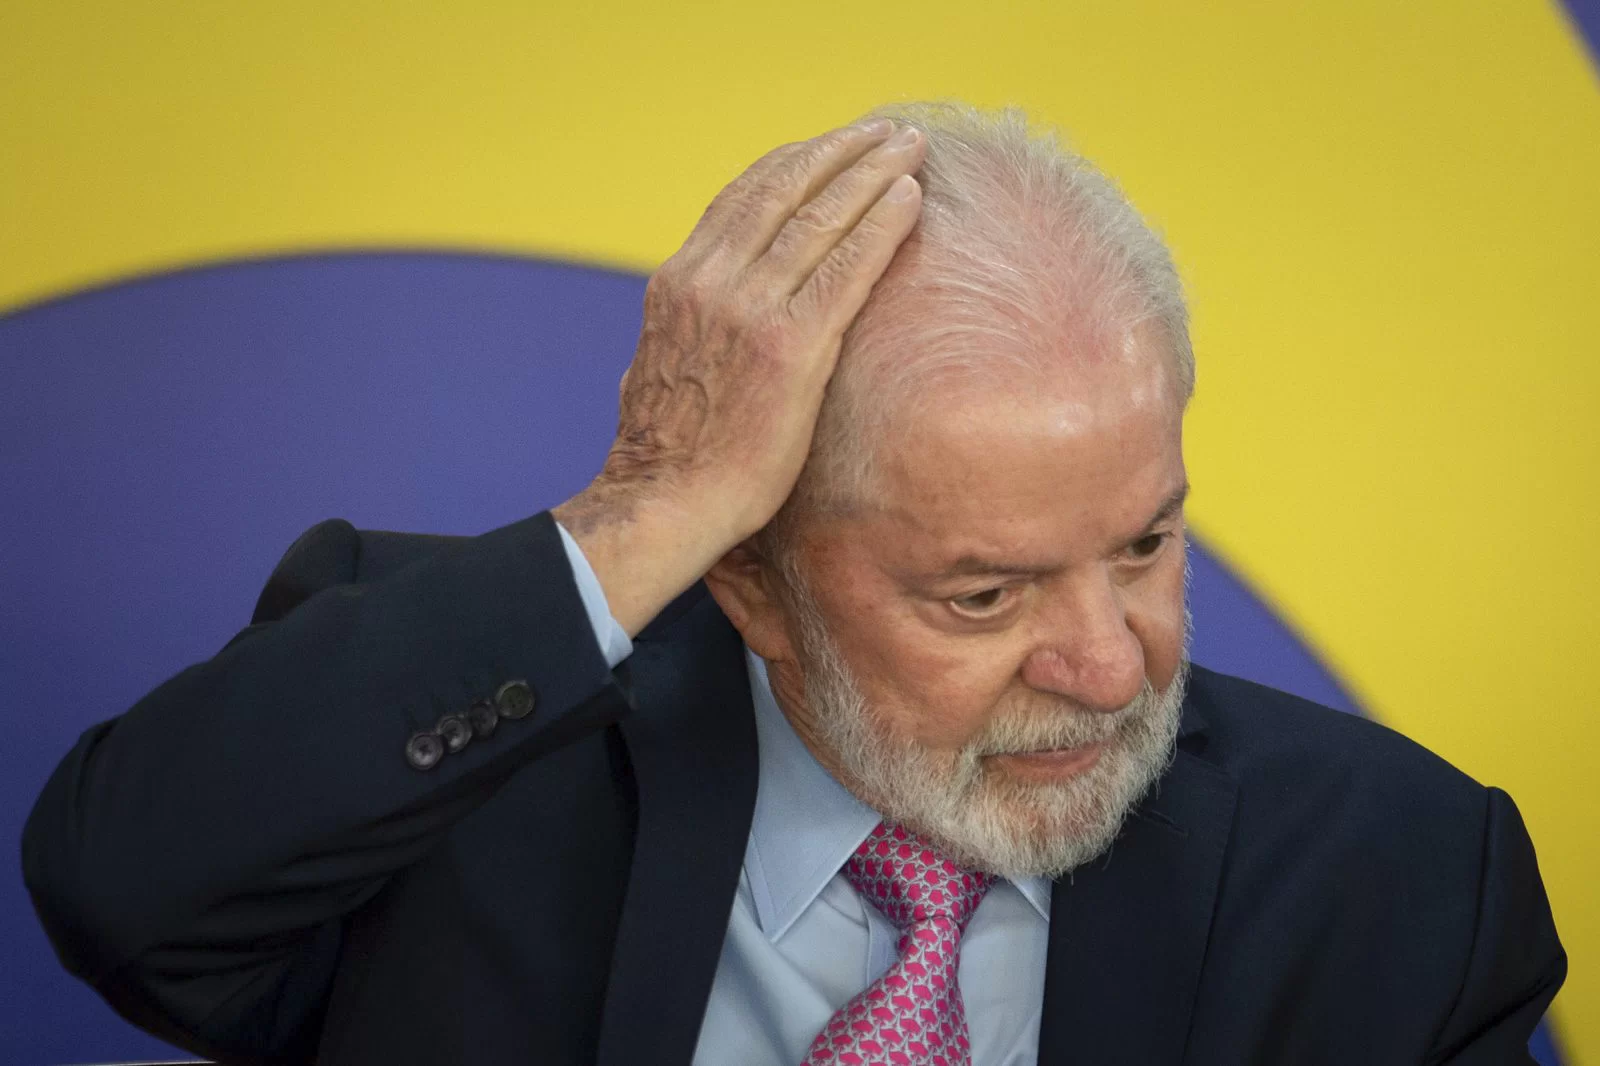 Politica: Para ministros do STF e do governo, veto total de Lula a saidinha seria munição para extrema direita A Câmara dos Deputados aprovou